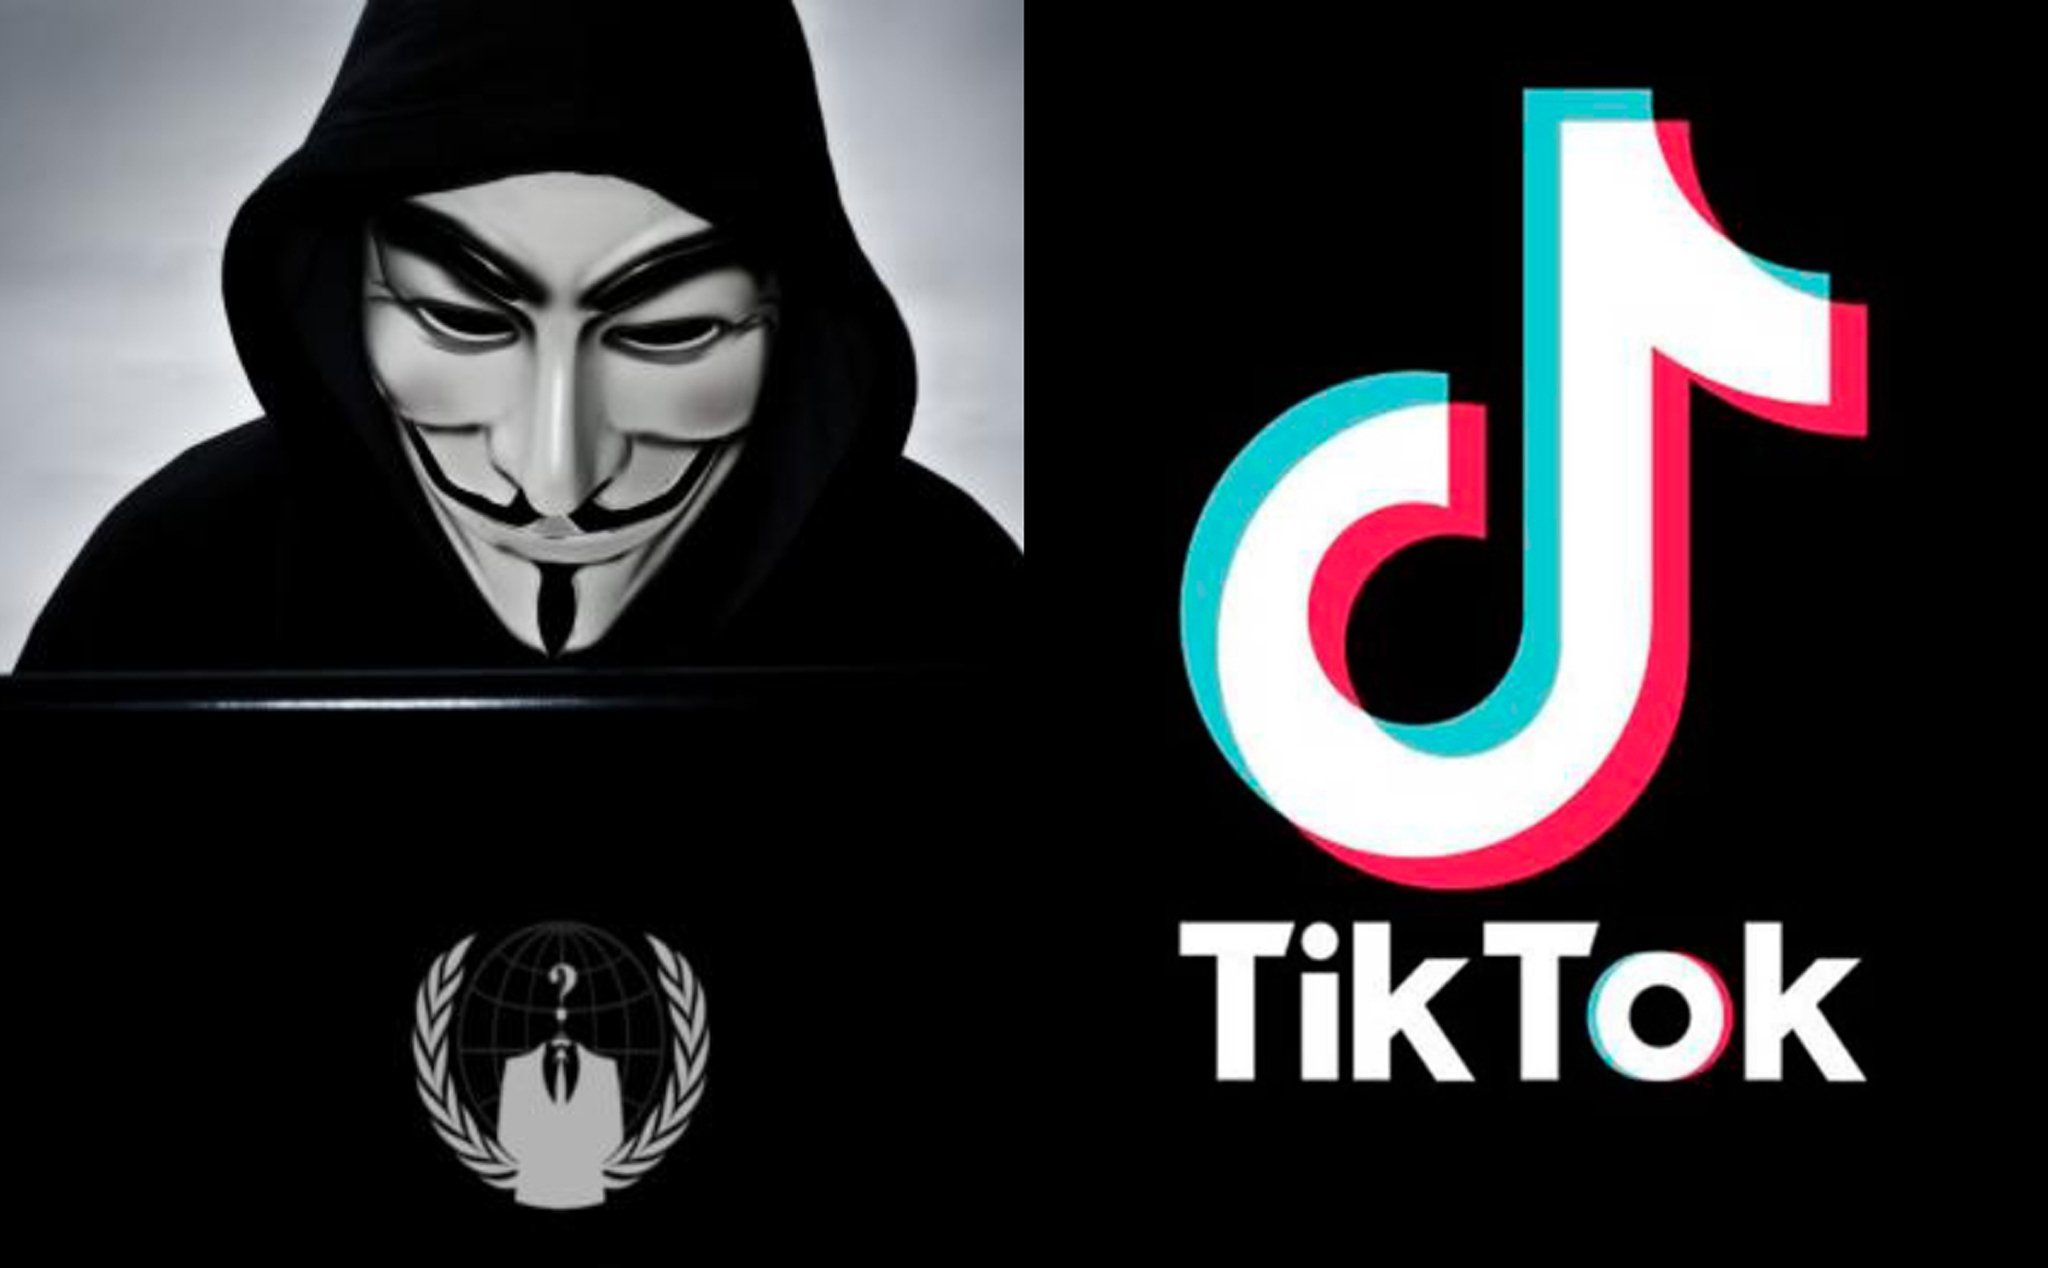 Nhóm Hacker lừng danh Anonymous đưa ra cảnh báo đặc biệt nghiêm trọng và nguy hiểm về ứng dụng TikTok